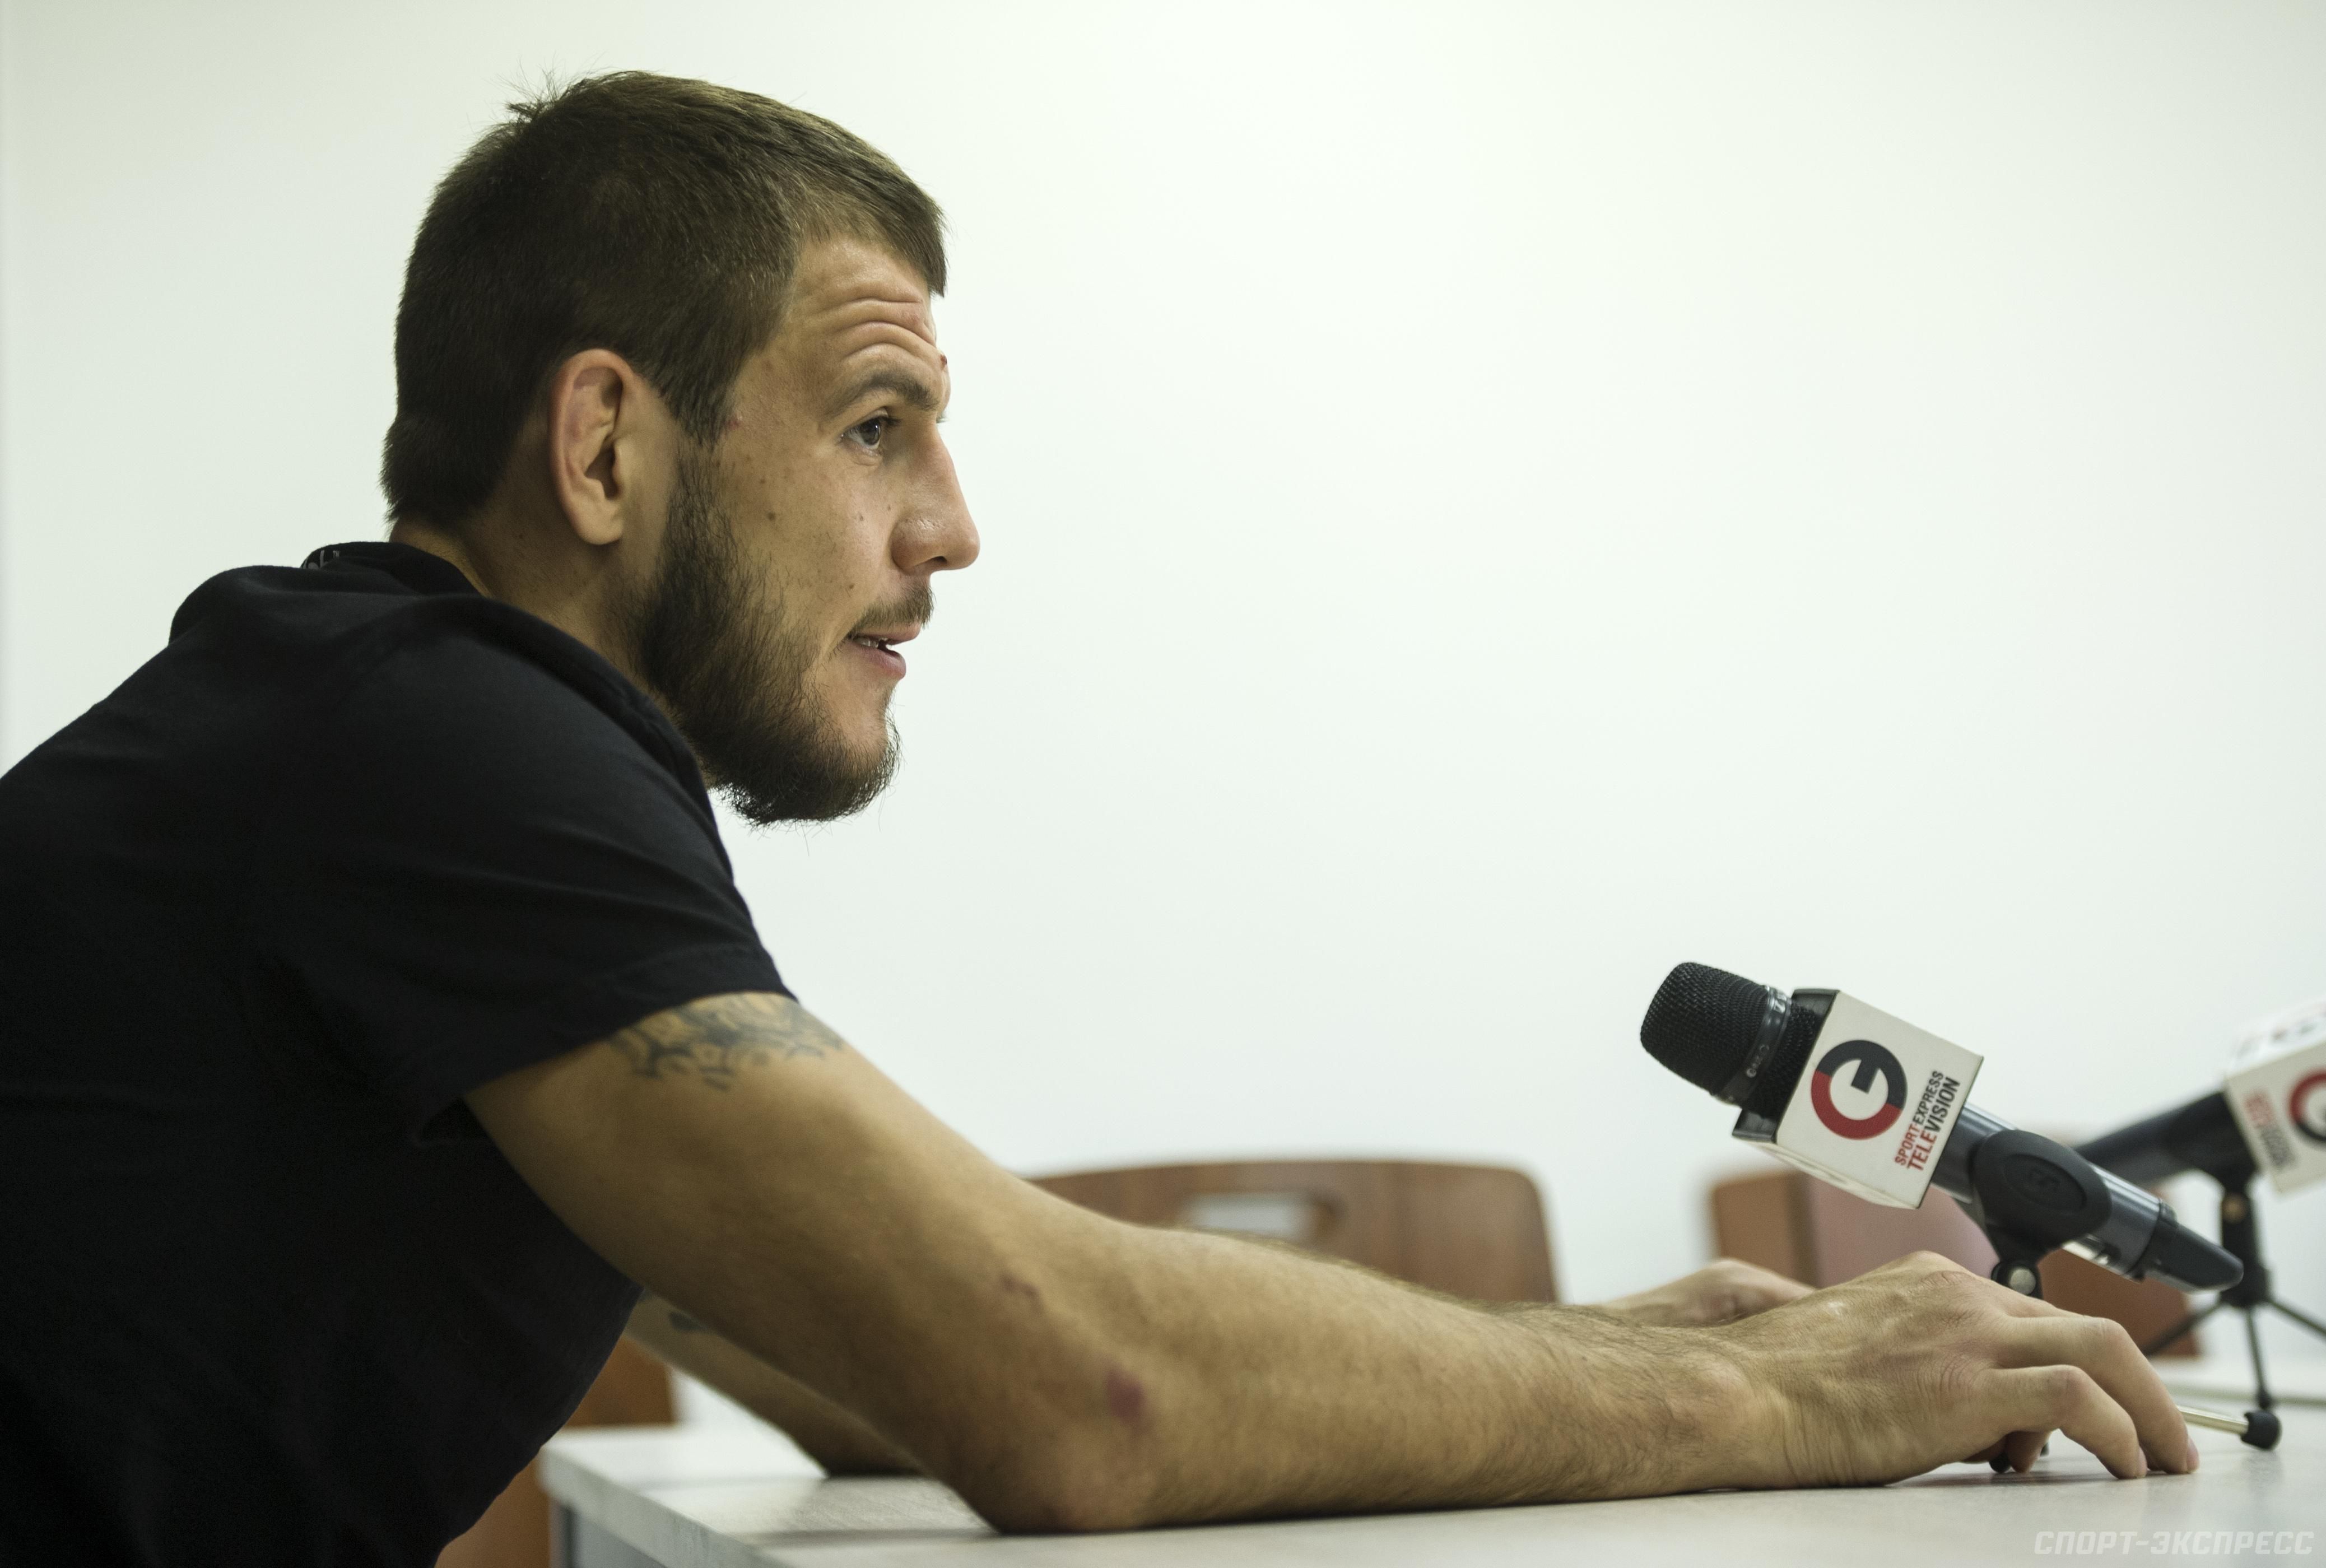 "Передается через телевизор": украинский боец UFC Крылов высказался о коронавирусе